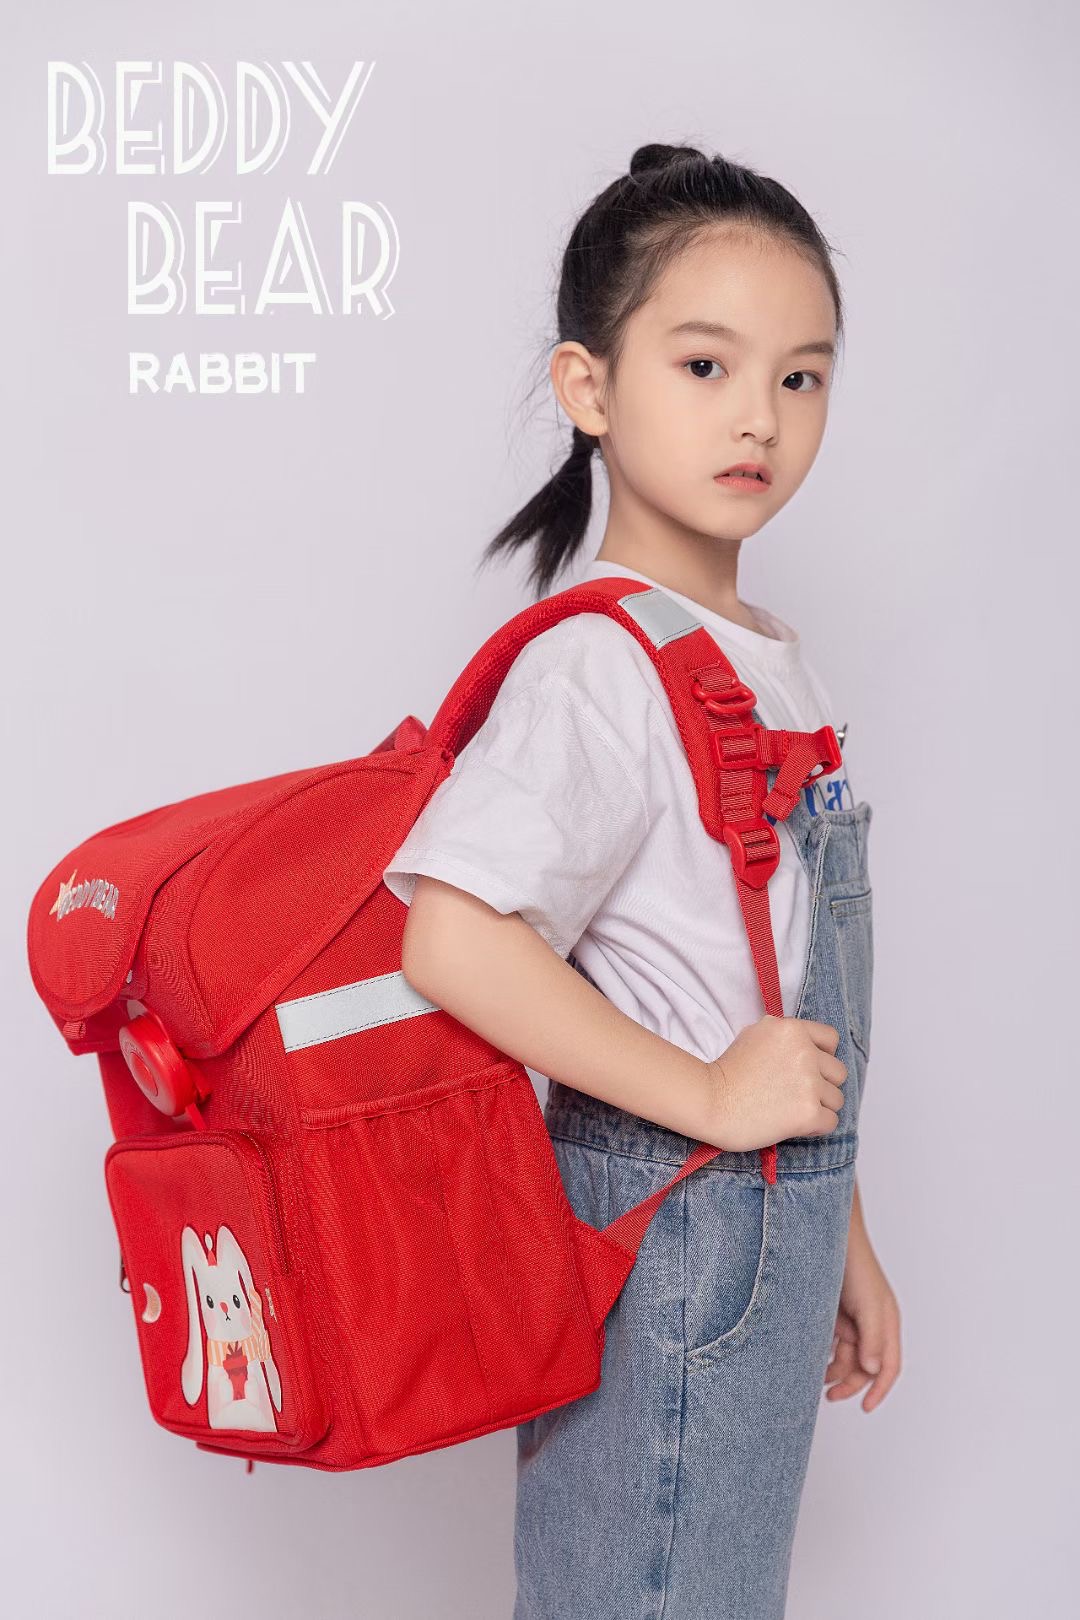 Balo Cho Trẻ em lớp 1 BEDDYBEAR Schoolbag Chibi Maruko Hồng dành cho Bé học Tiểu học từ 06 tuổi trở lên . Mã BF HONG. Kích thước 39 x 30 x 22 cm . Chính hãng Beddy Bear